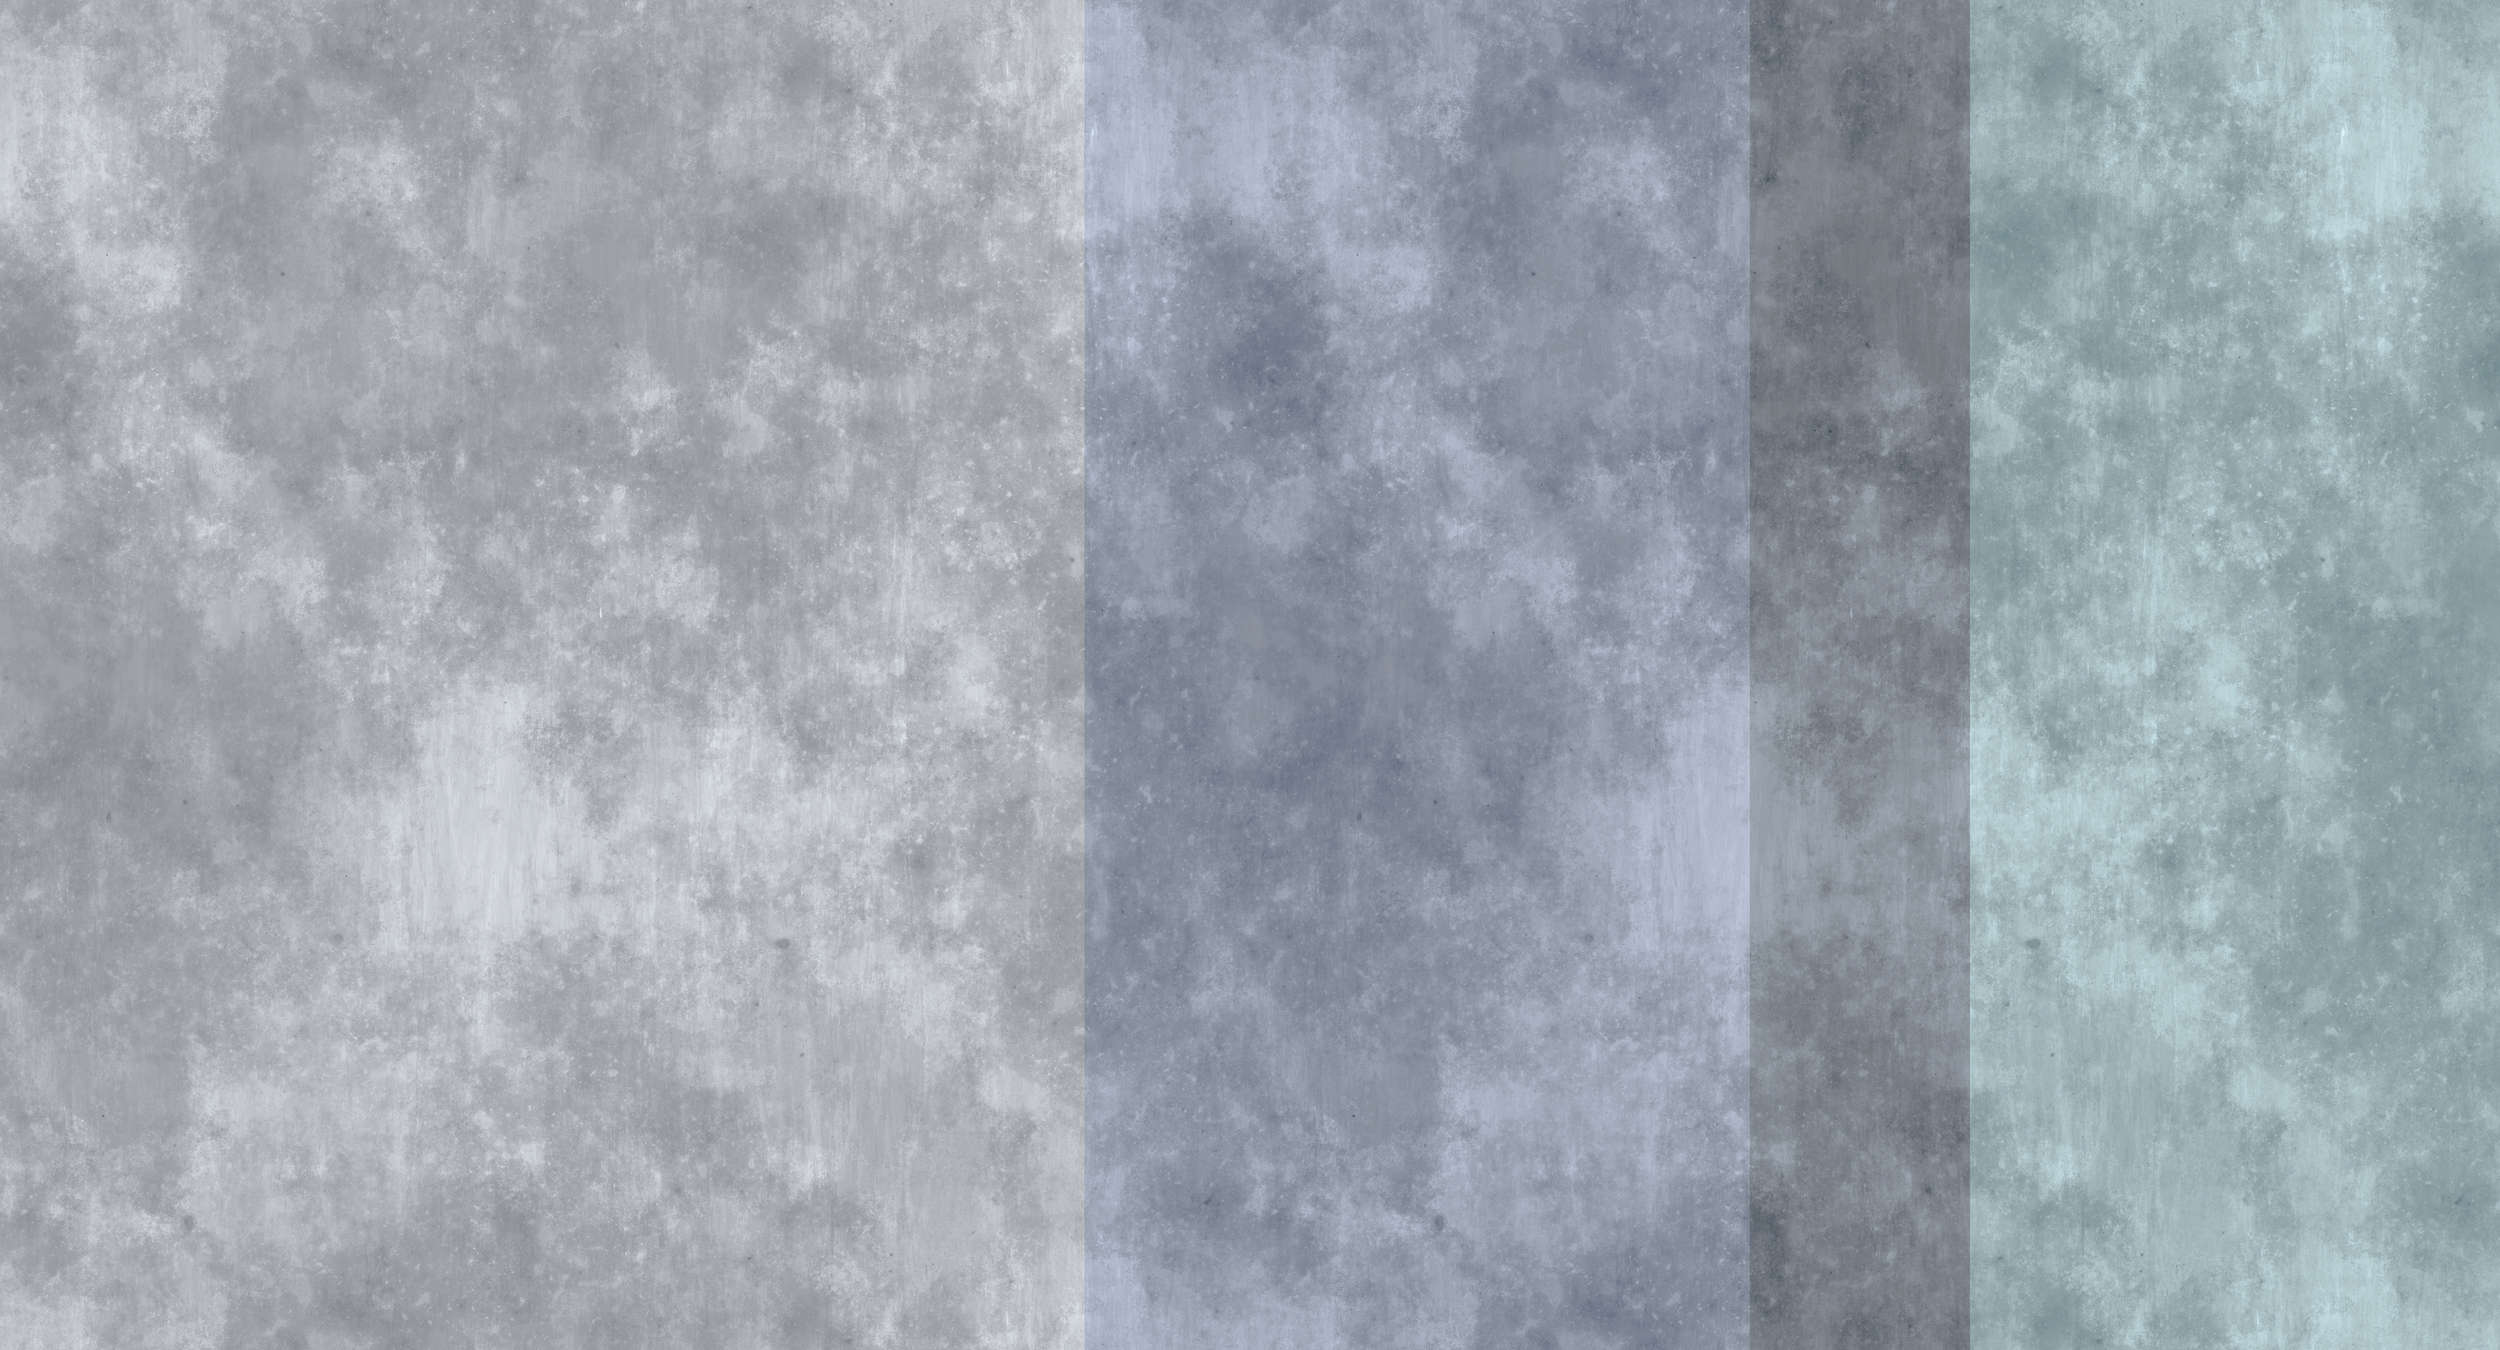             Concrete Optics Behang met Strepen - Grijs, Blauw
        